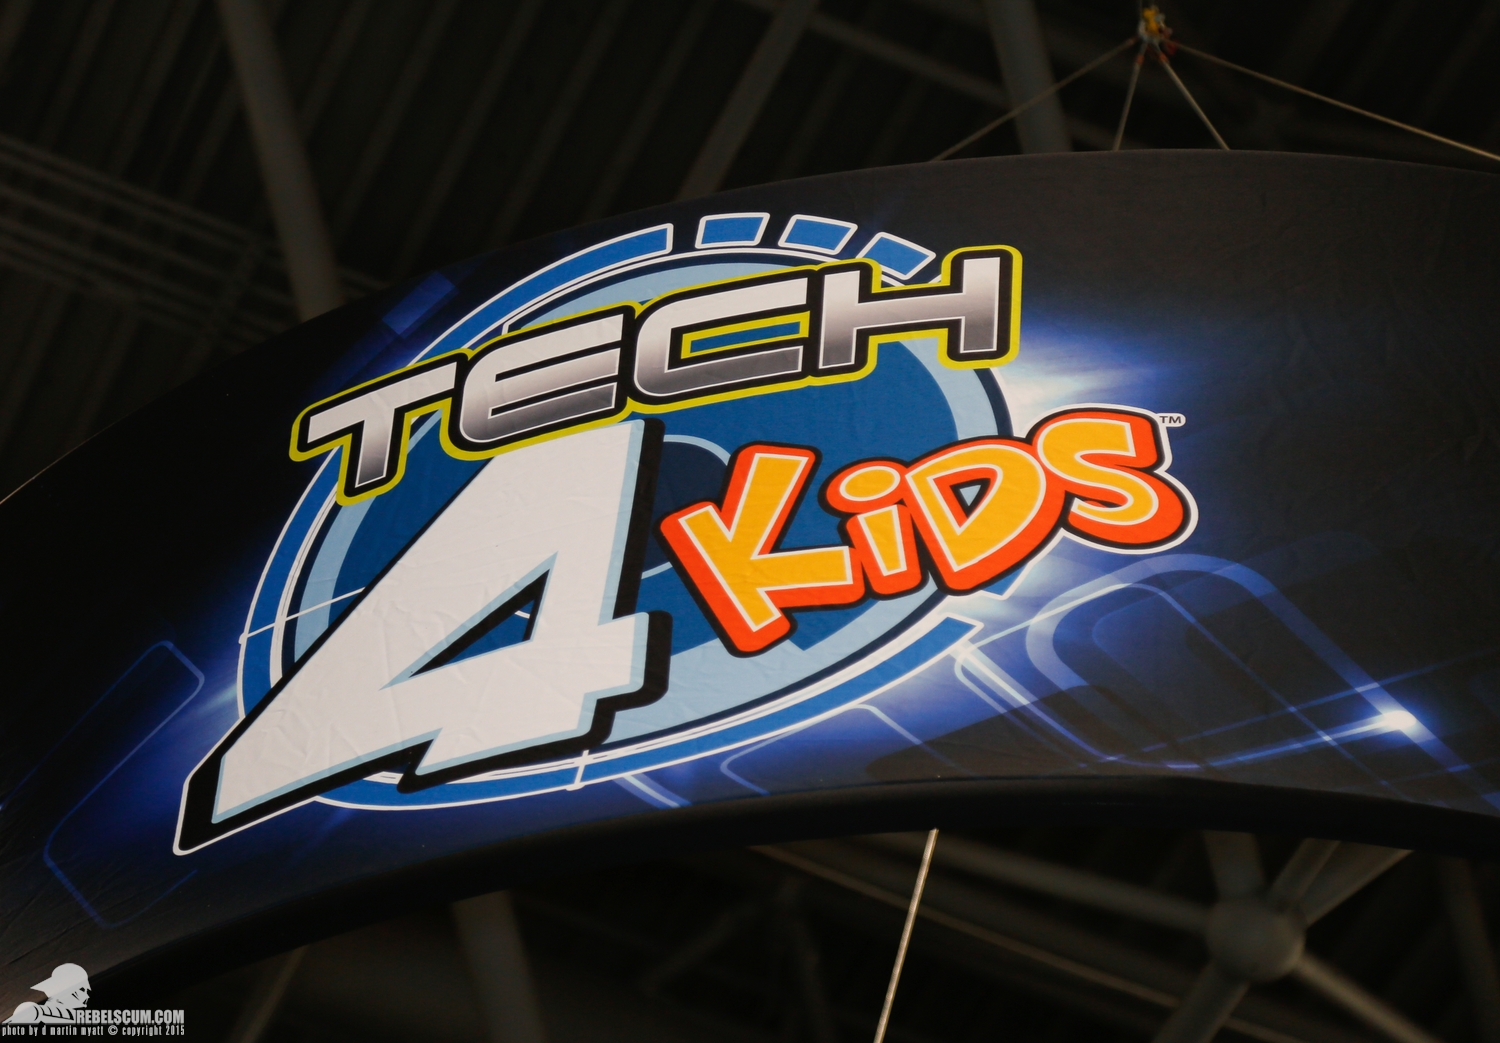 2015-International-Toy-Fair-Tech-4-Kids-Star-Wars-001.jpg